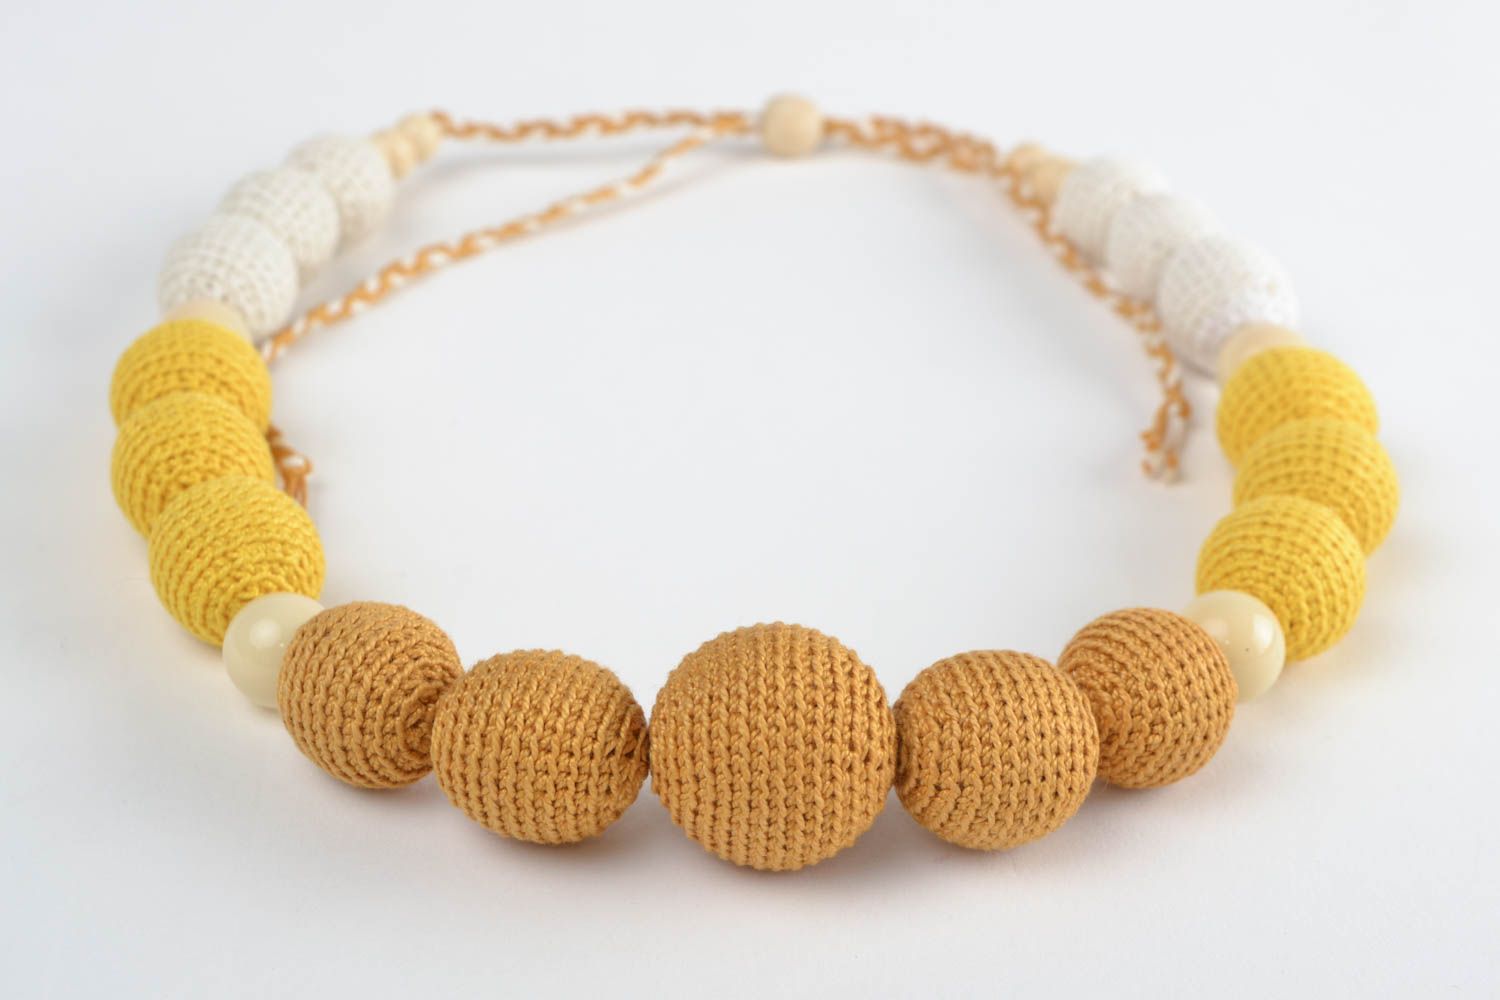 Textil Collier aus Holzperlen gelb weiß schön stilvoll Handarbeit für Frauen foto 3